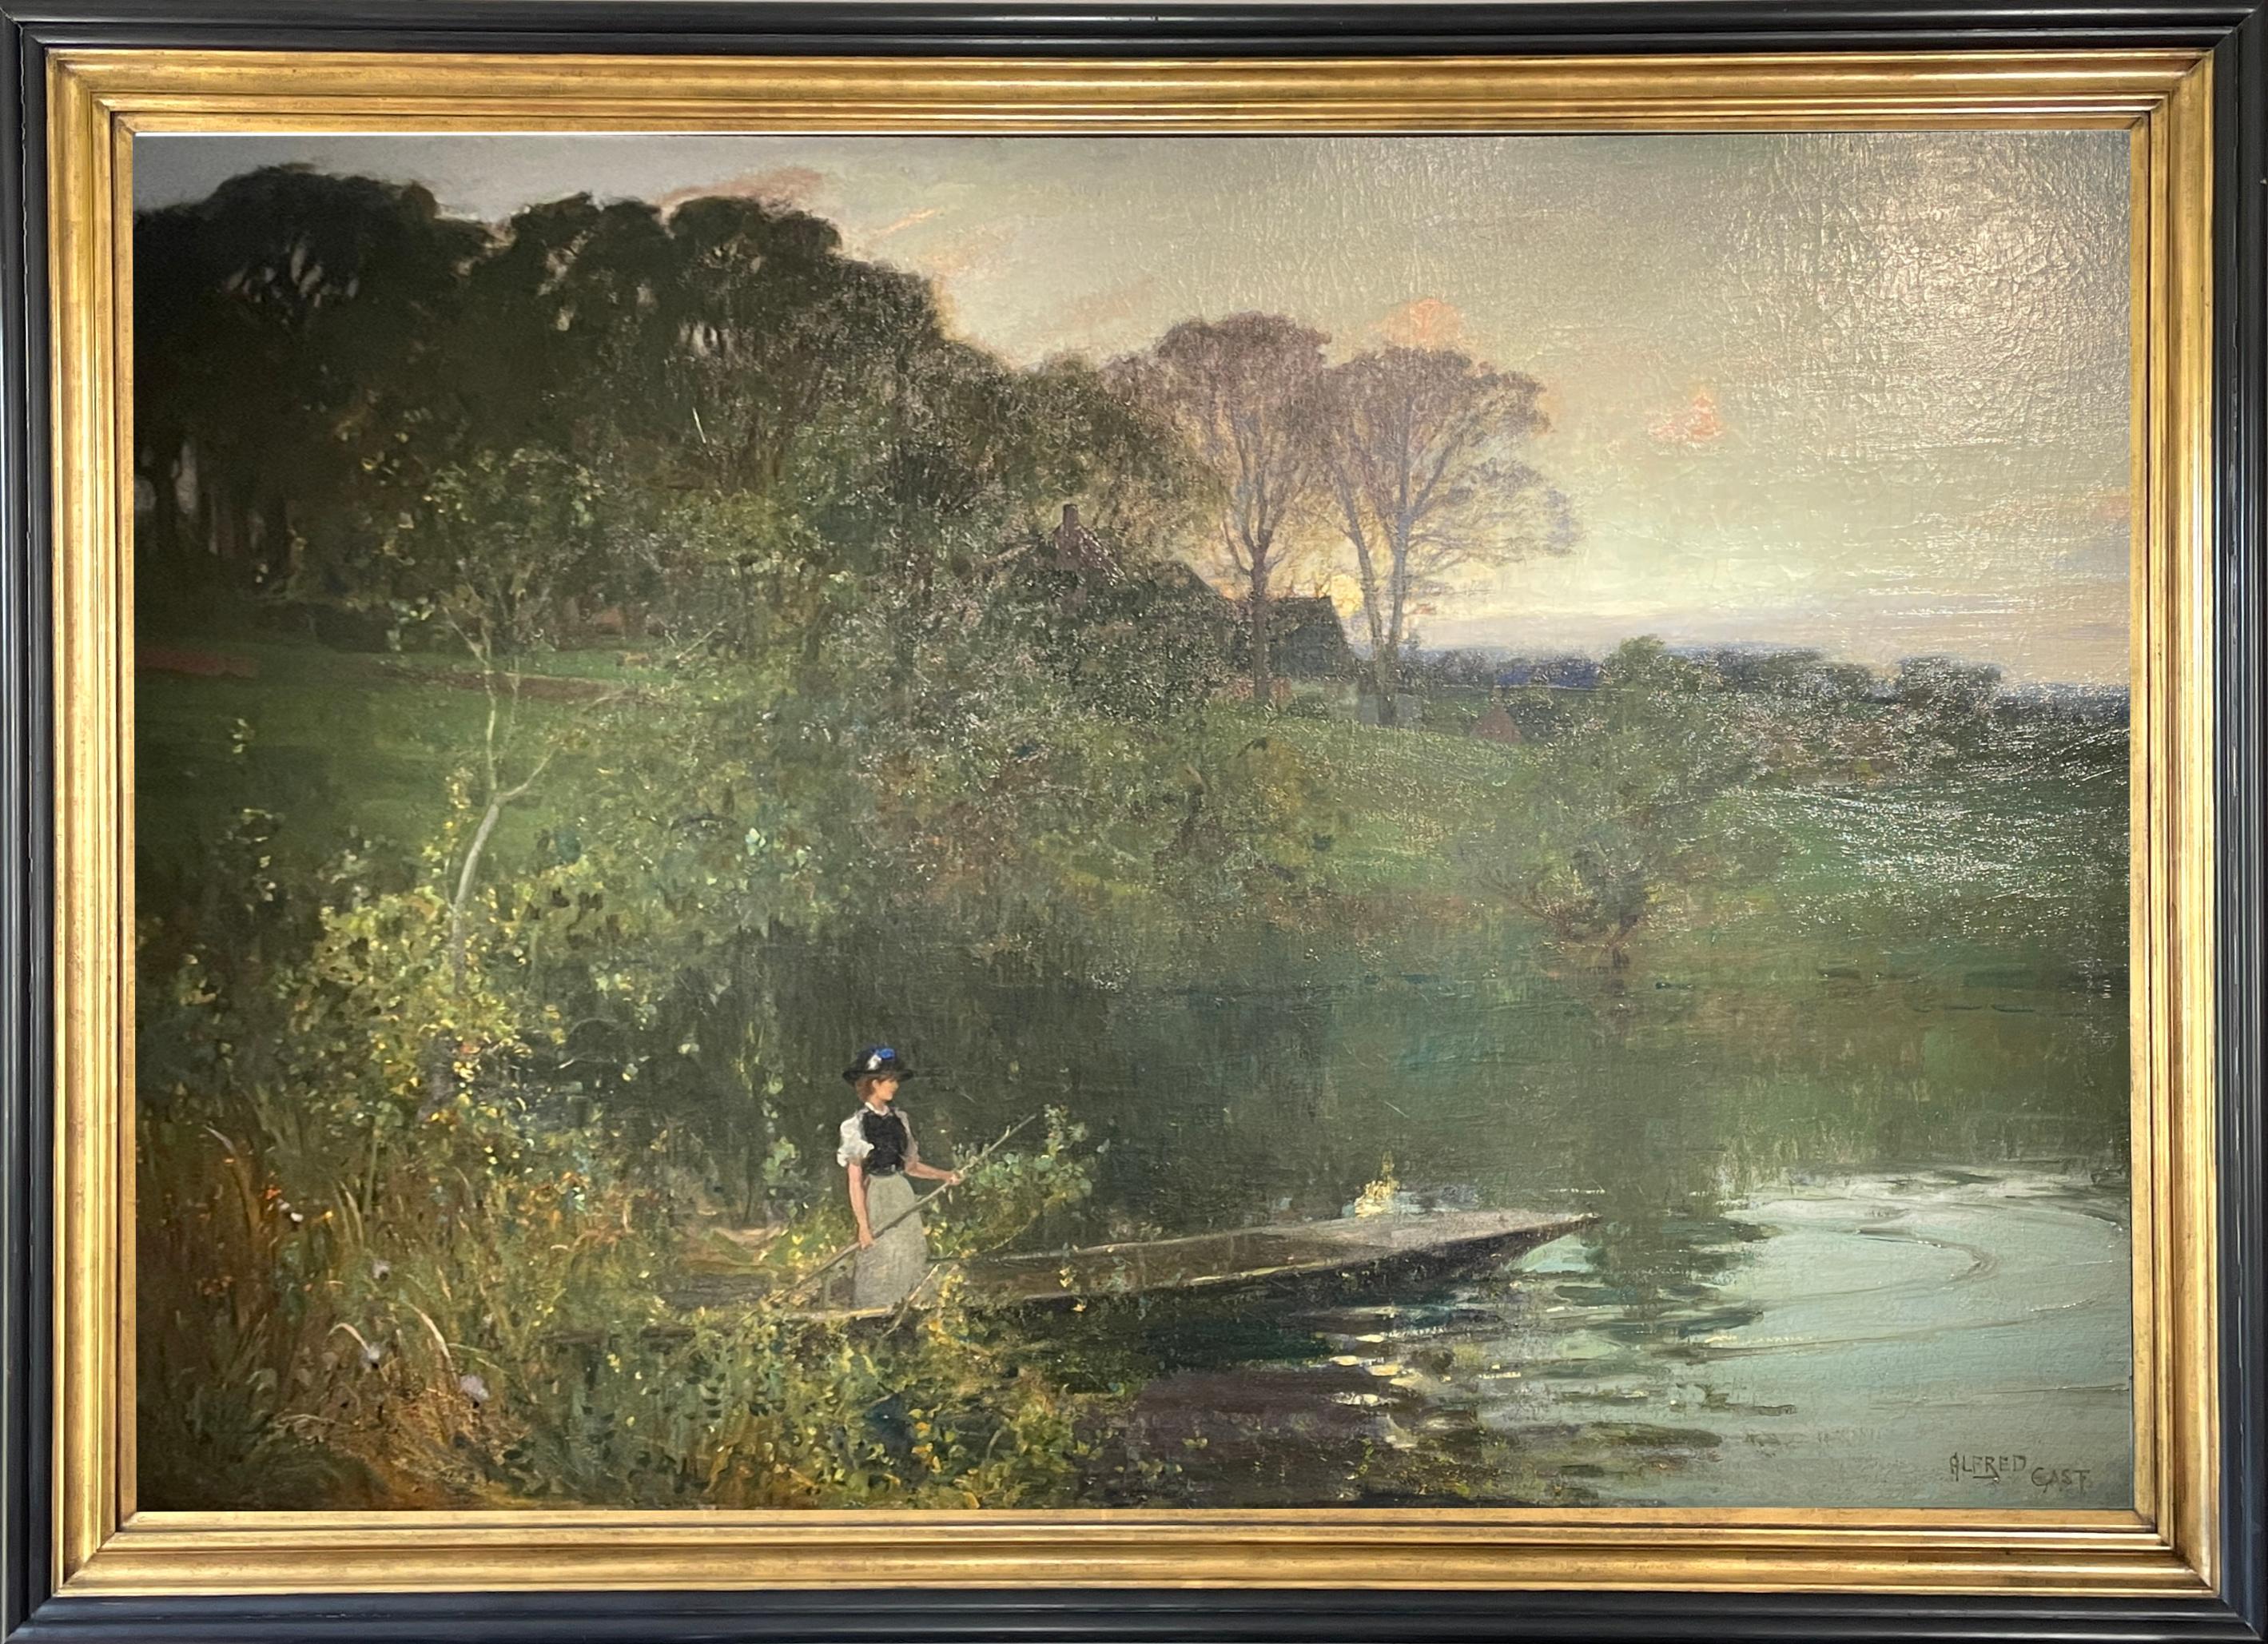 Très grande huile sur toile "Crépuscule sur la rivière" de Sir Alfred East RA, RBA (1844 - 1913)
Signé par l'artiste.
59" x 82" dans le cadre. (Photo principale prise avec un projecteur)

East est né à Kettering dans le Northamptonshire et a étudié